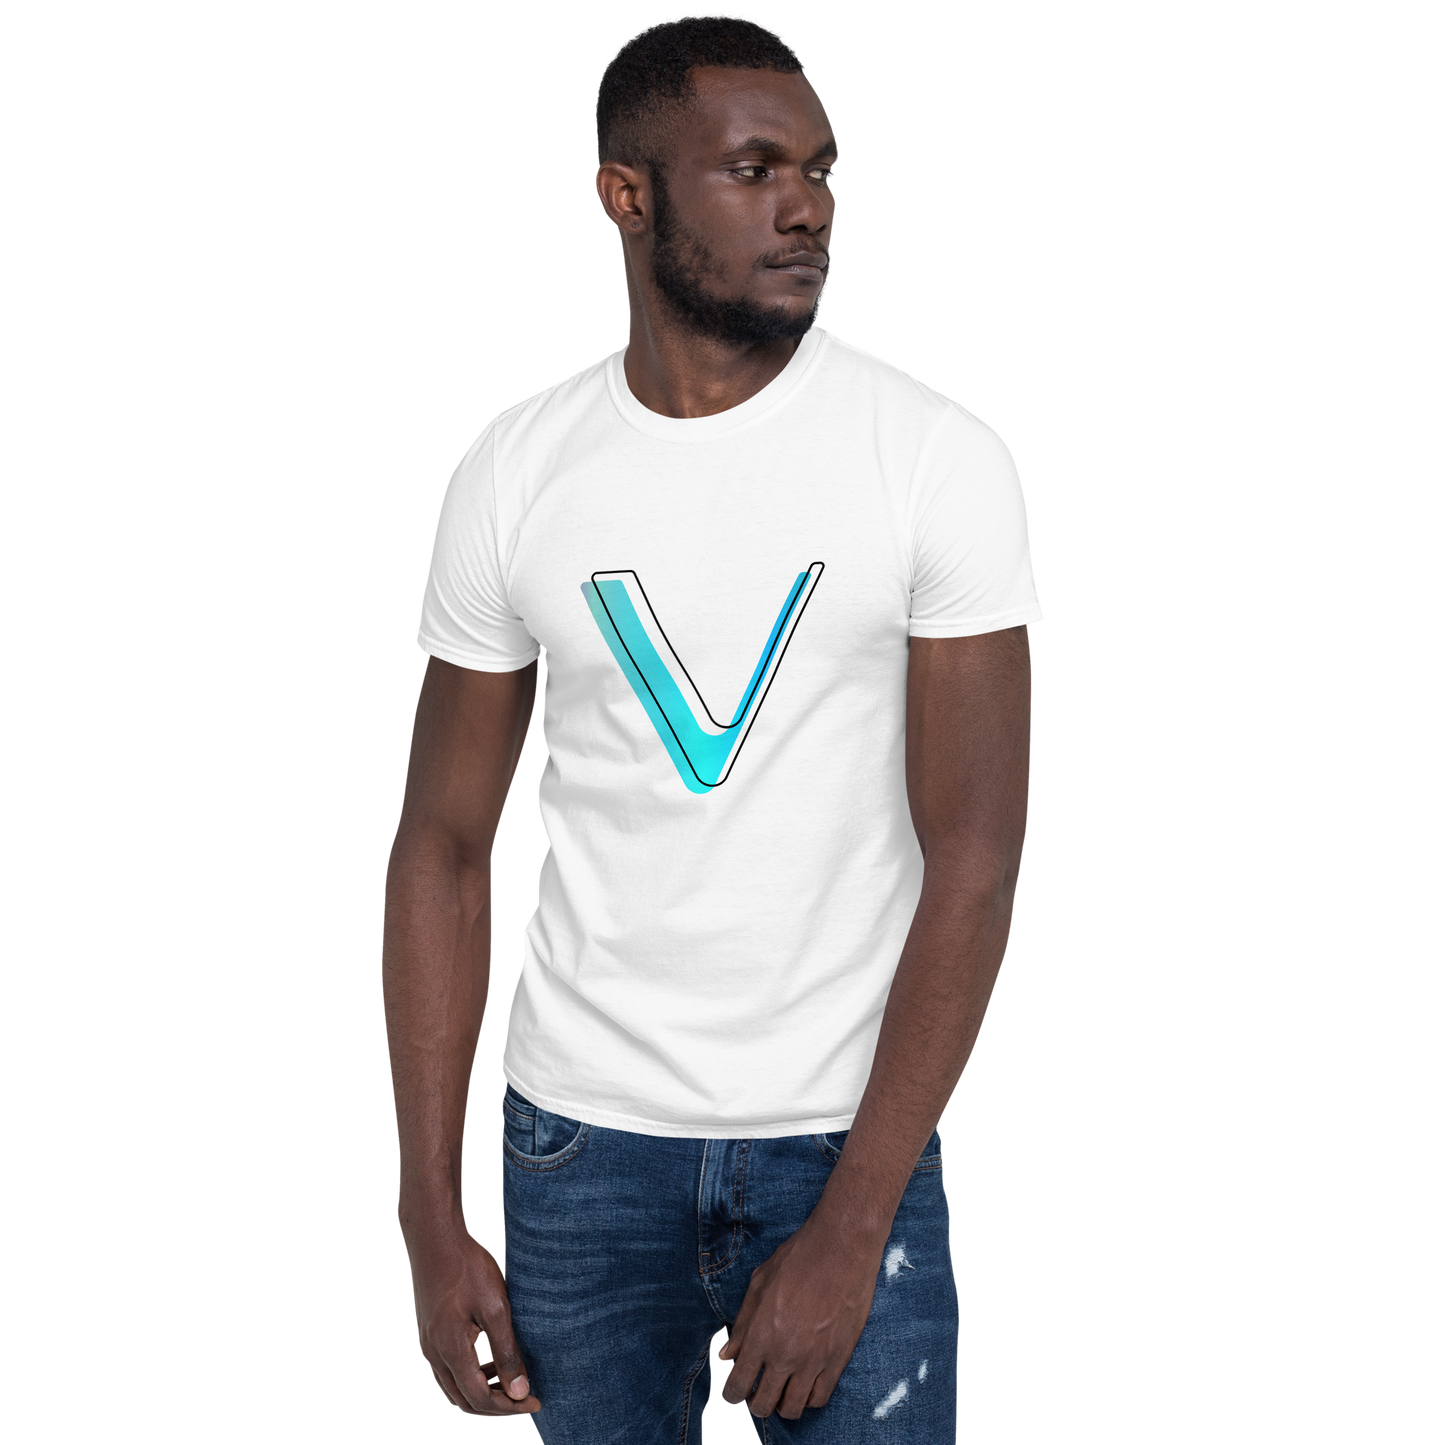 Vechain Offset Crypto VET Short-Sleeve Unisex T-Shirt